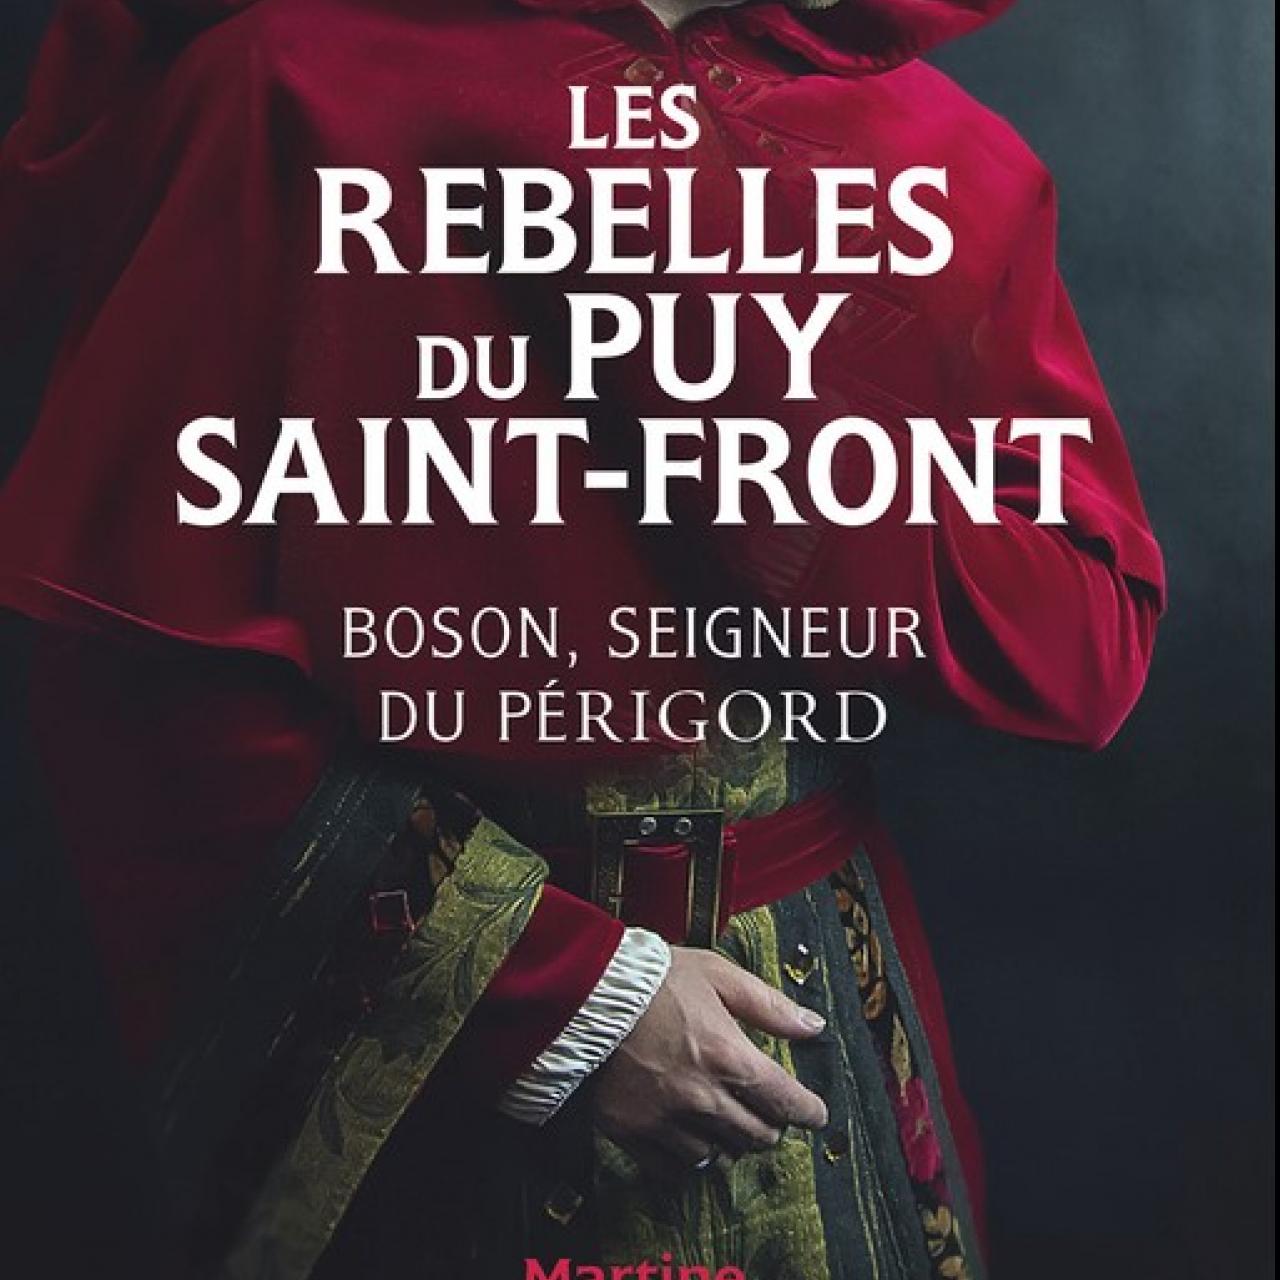 visuel Rebelles du Puy Saint-Front